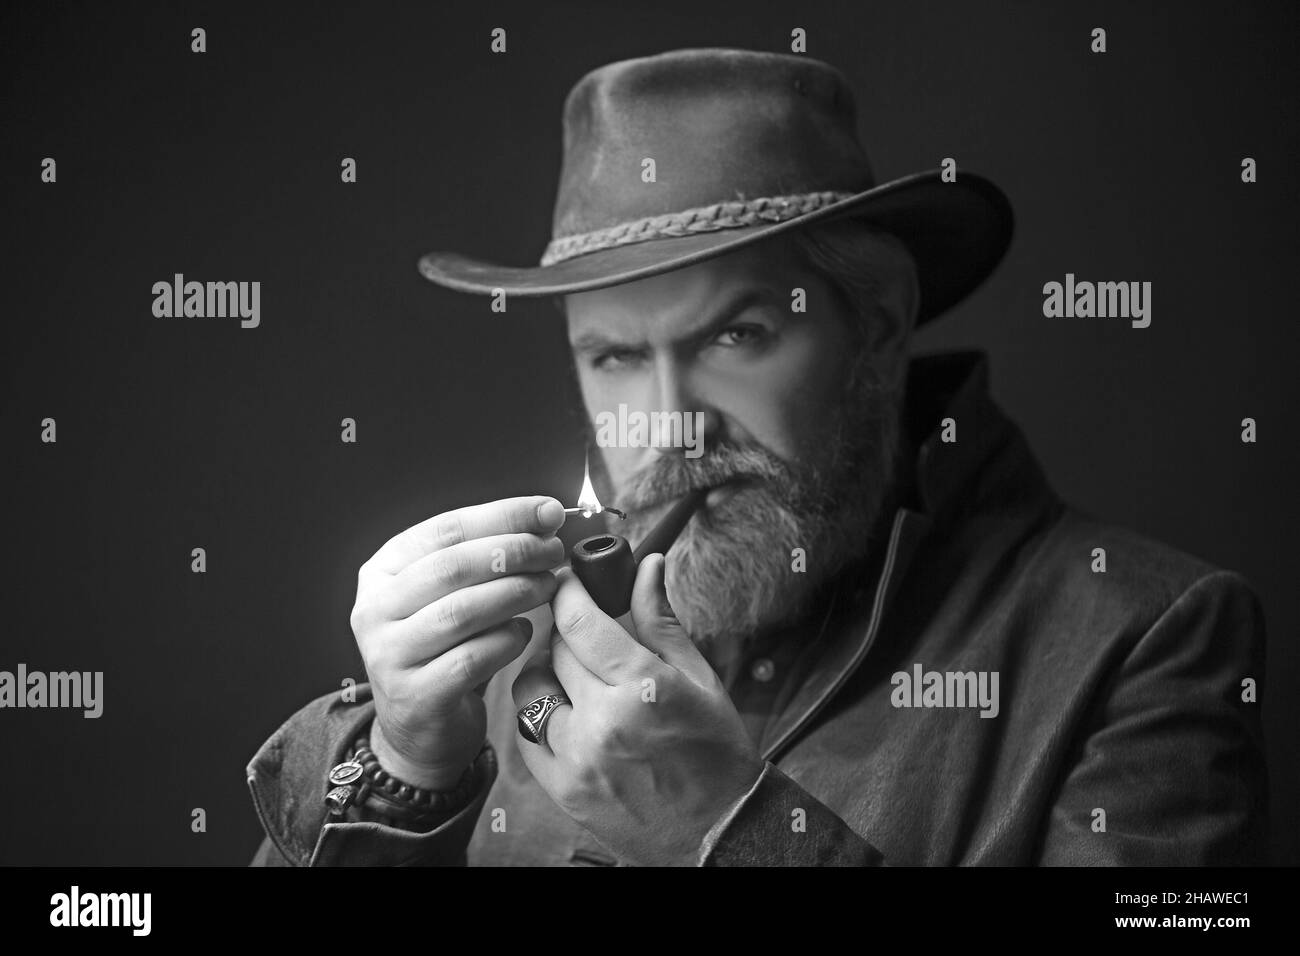 Pipe fumant vintage caractéristique cow-boy homme avec les cheveux gris et la barbe. Studio tourné sur fond sombre. Banque D'Images